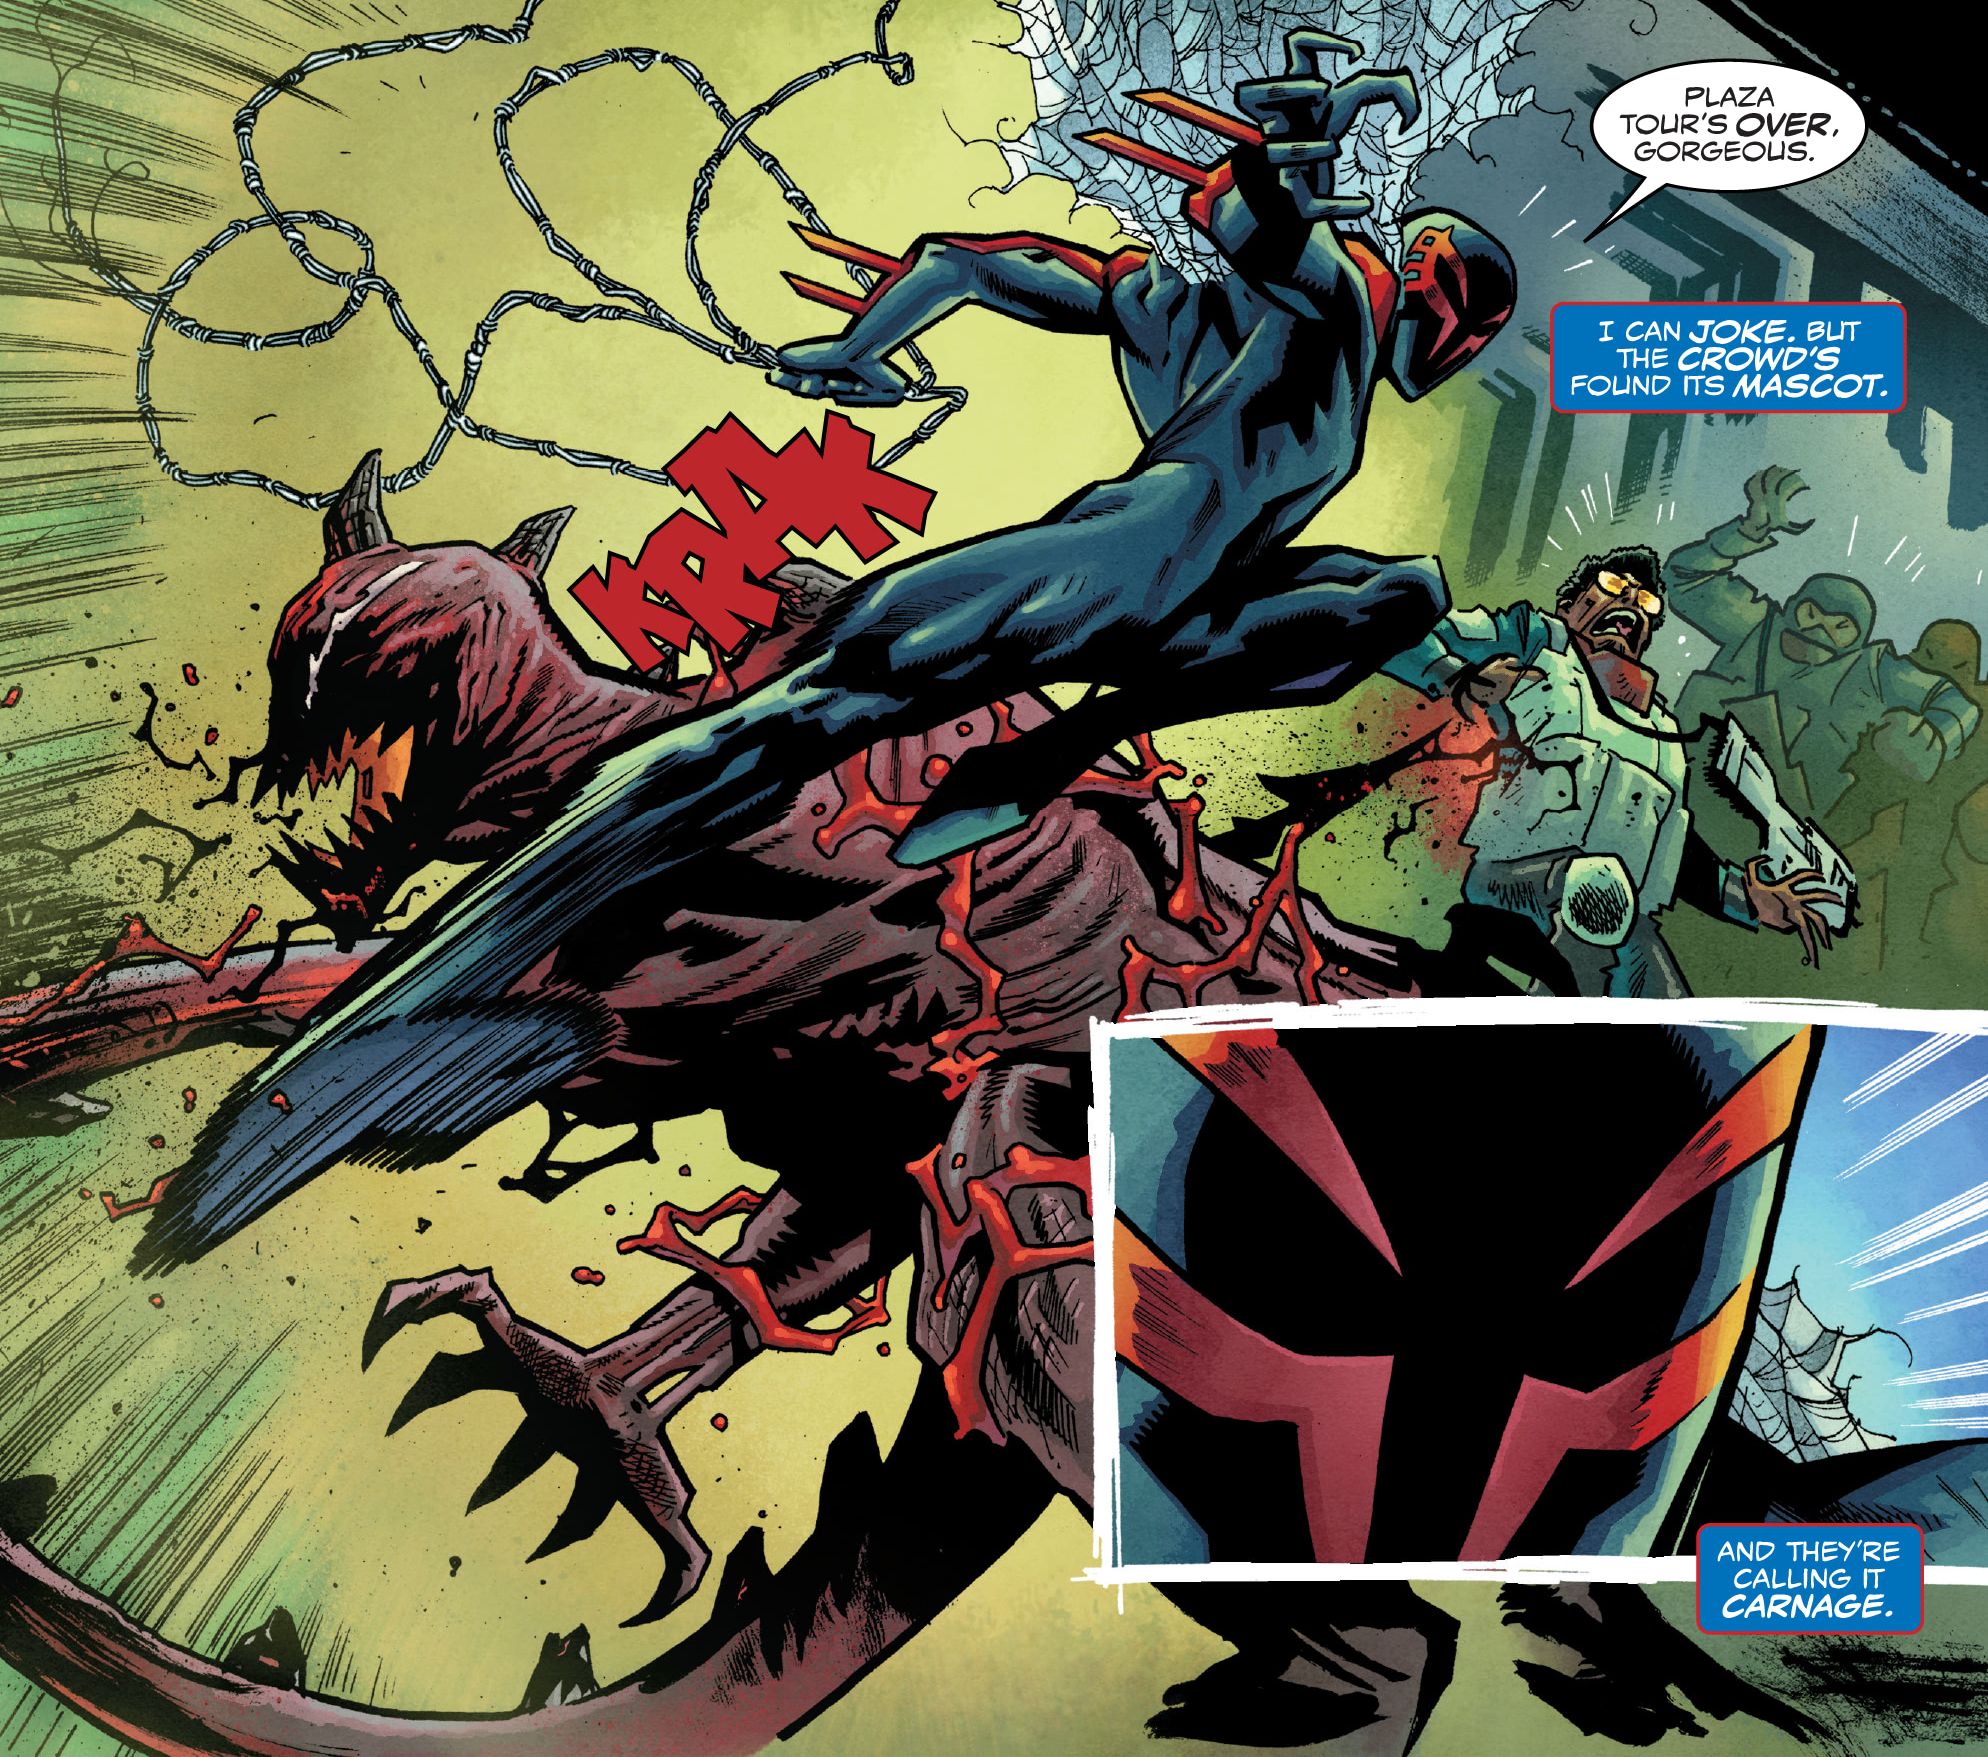 Spider-Man 2099 fights Carnage in Spider-Man 2099 Dark Genesis #1